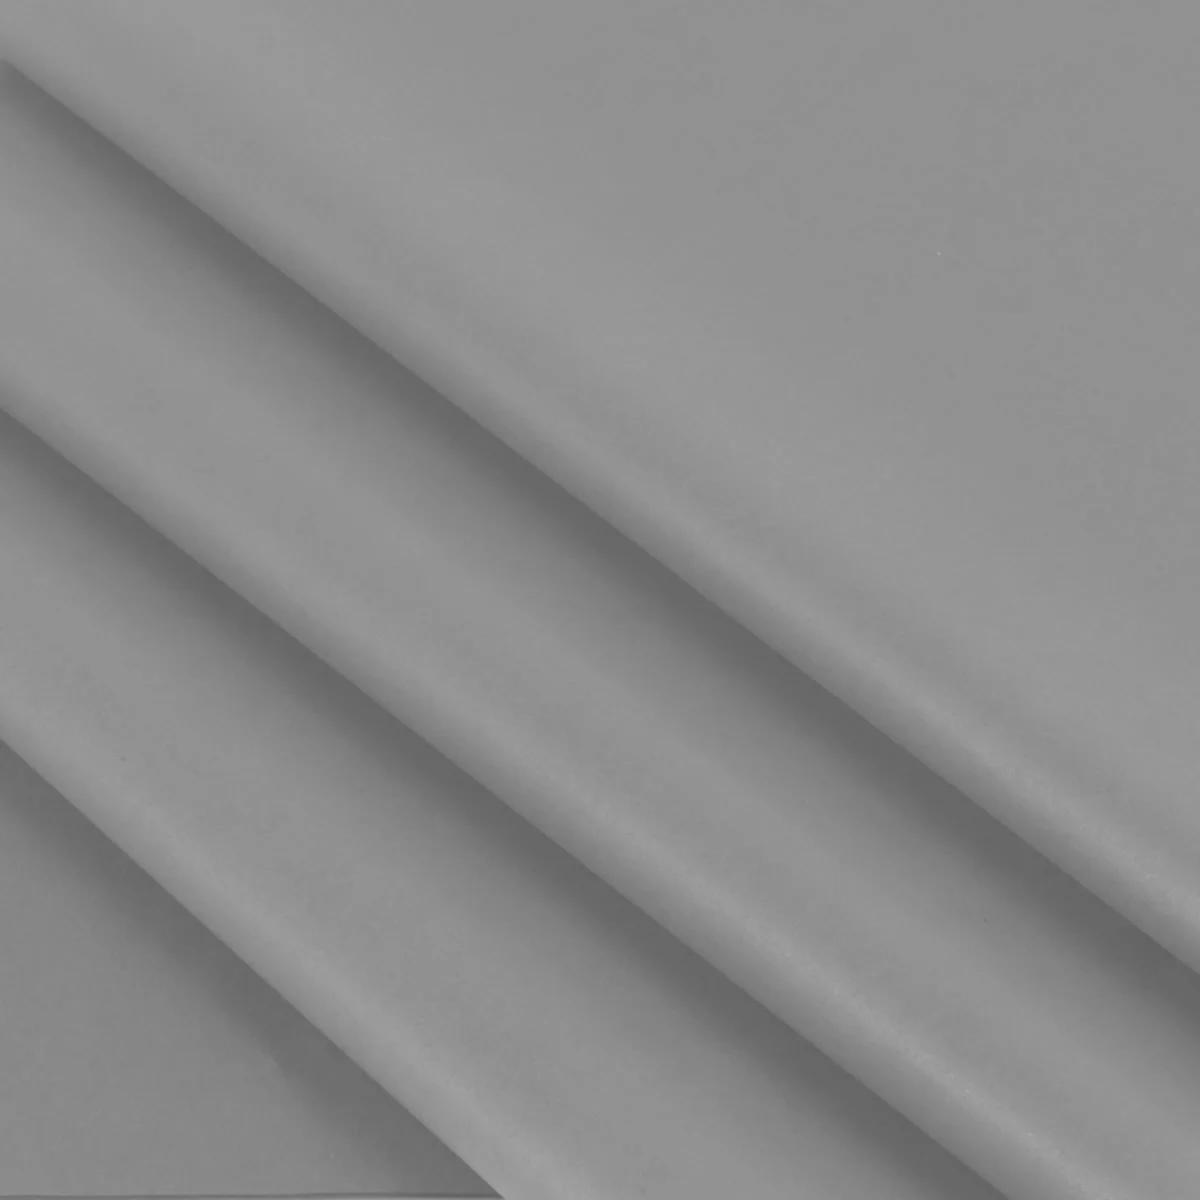 Vloeipapier grijs 35 x 50 cm (480 vellen)